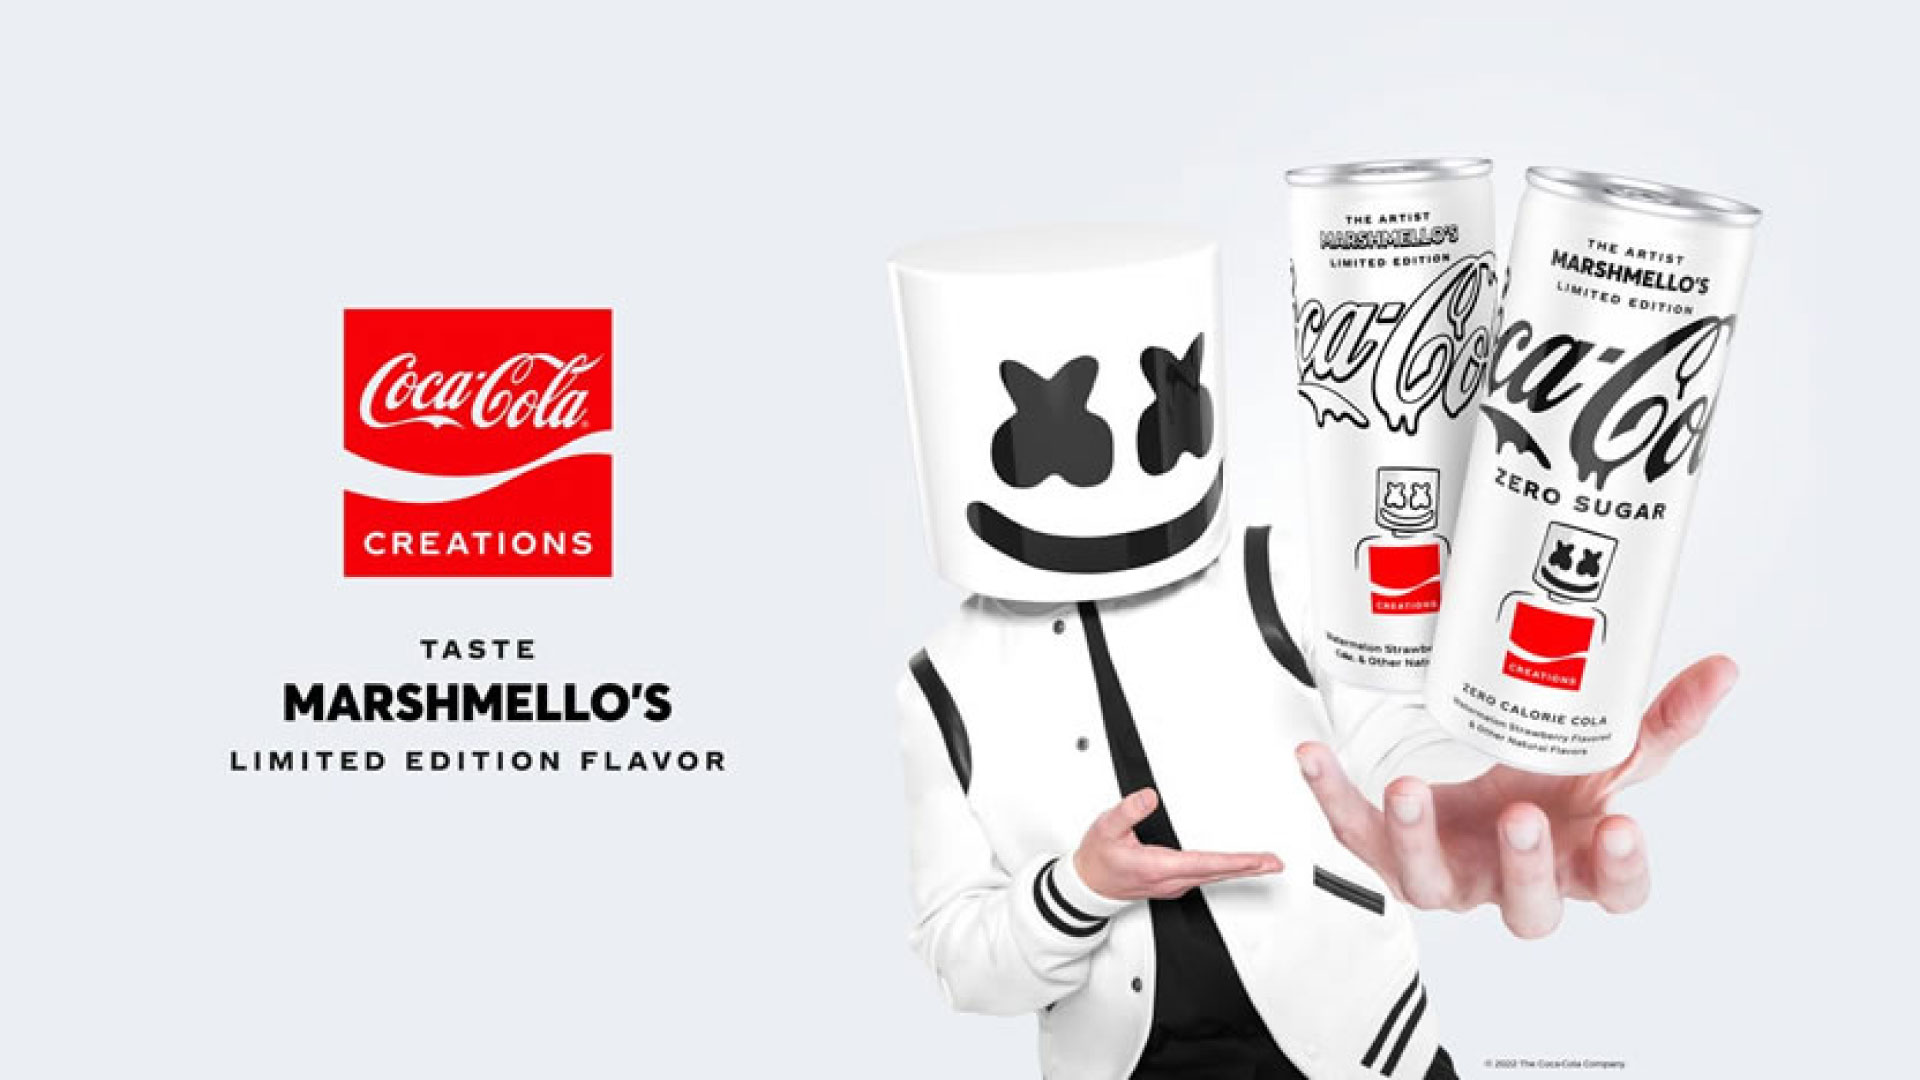 Marshmello y Coca Cola se unen para crear una edición limitada de la bebida gaseosa